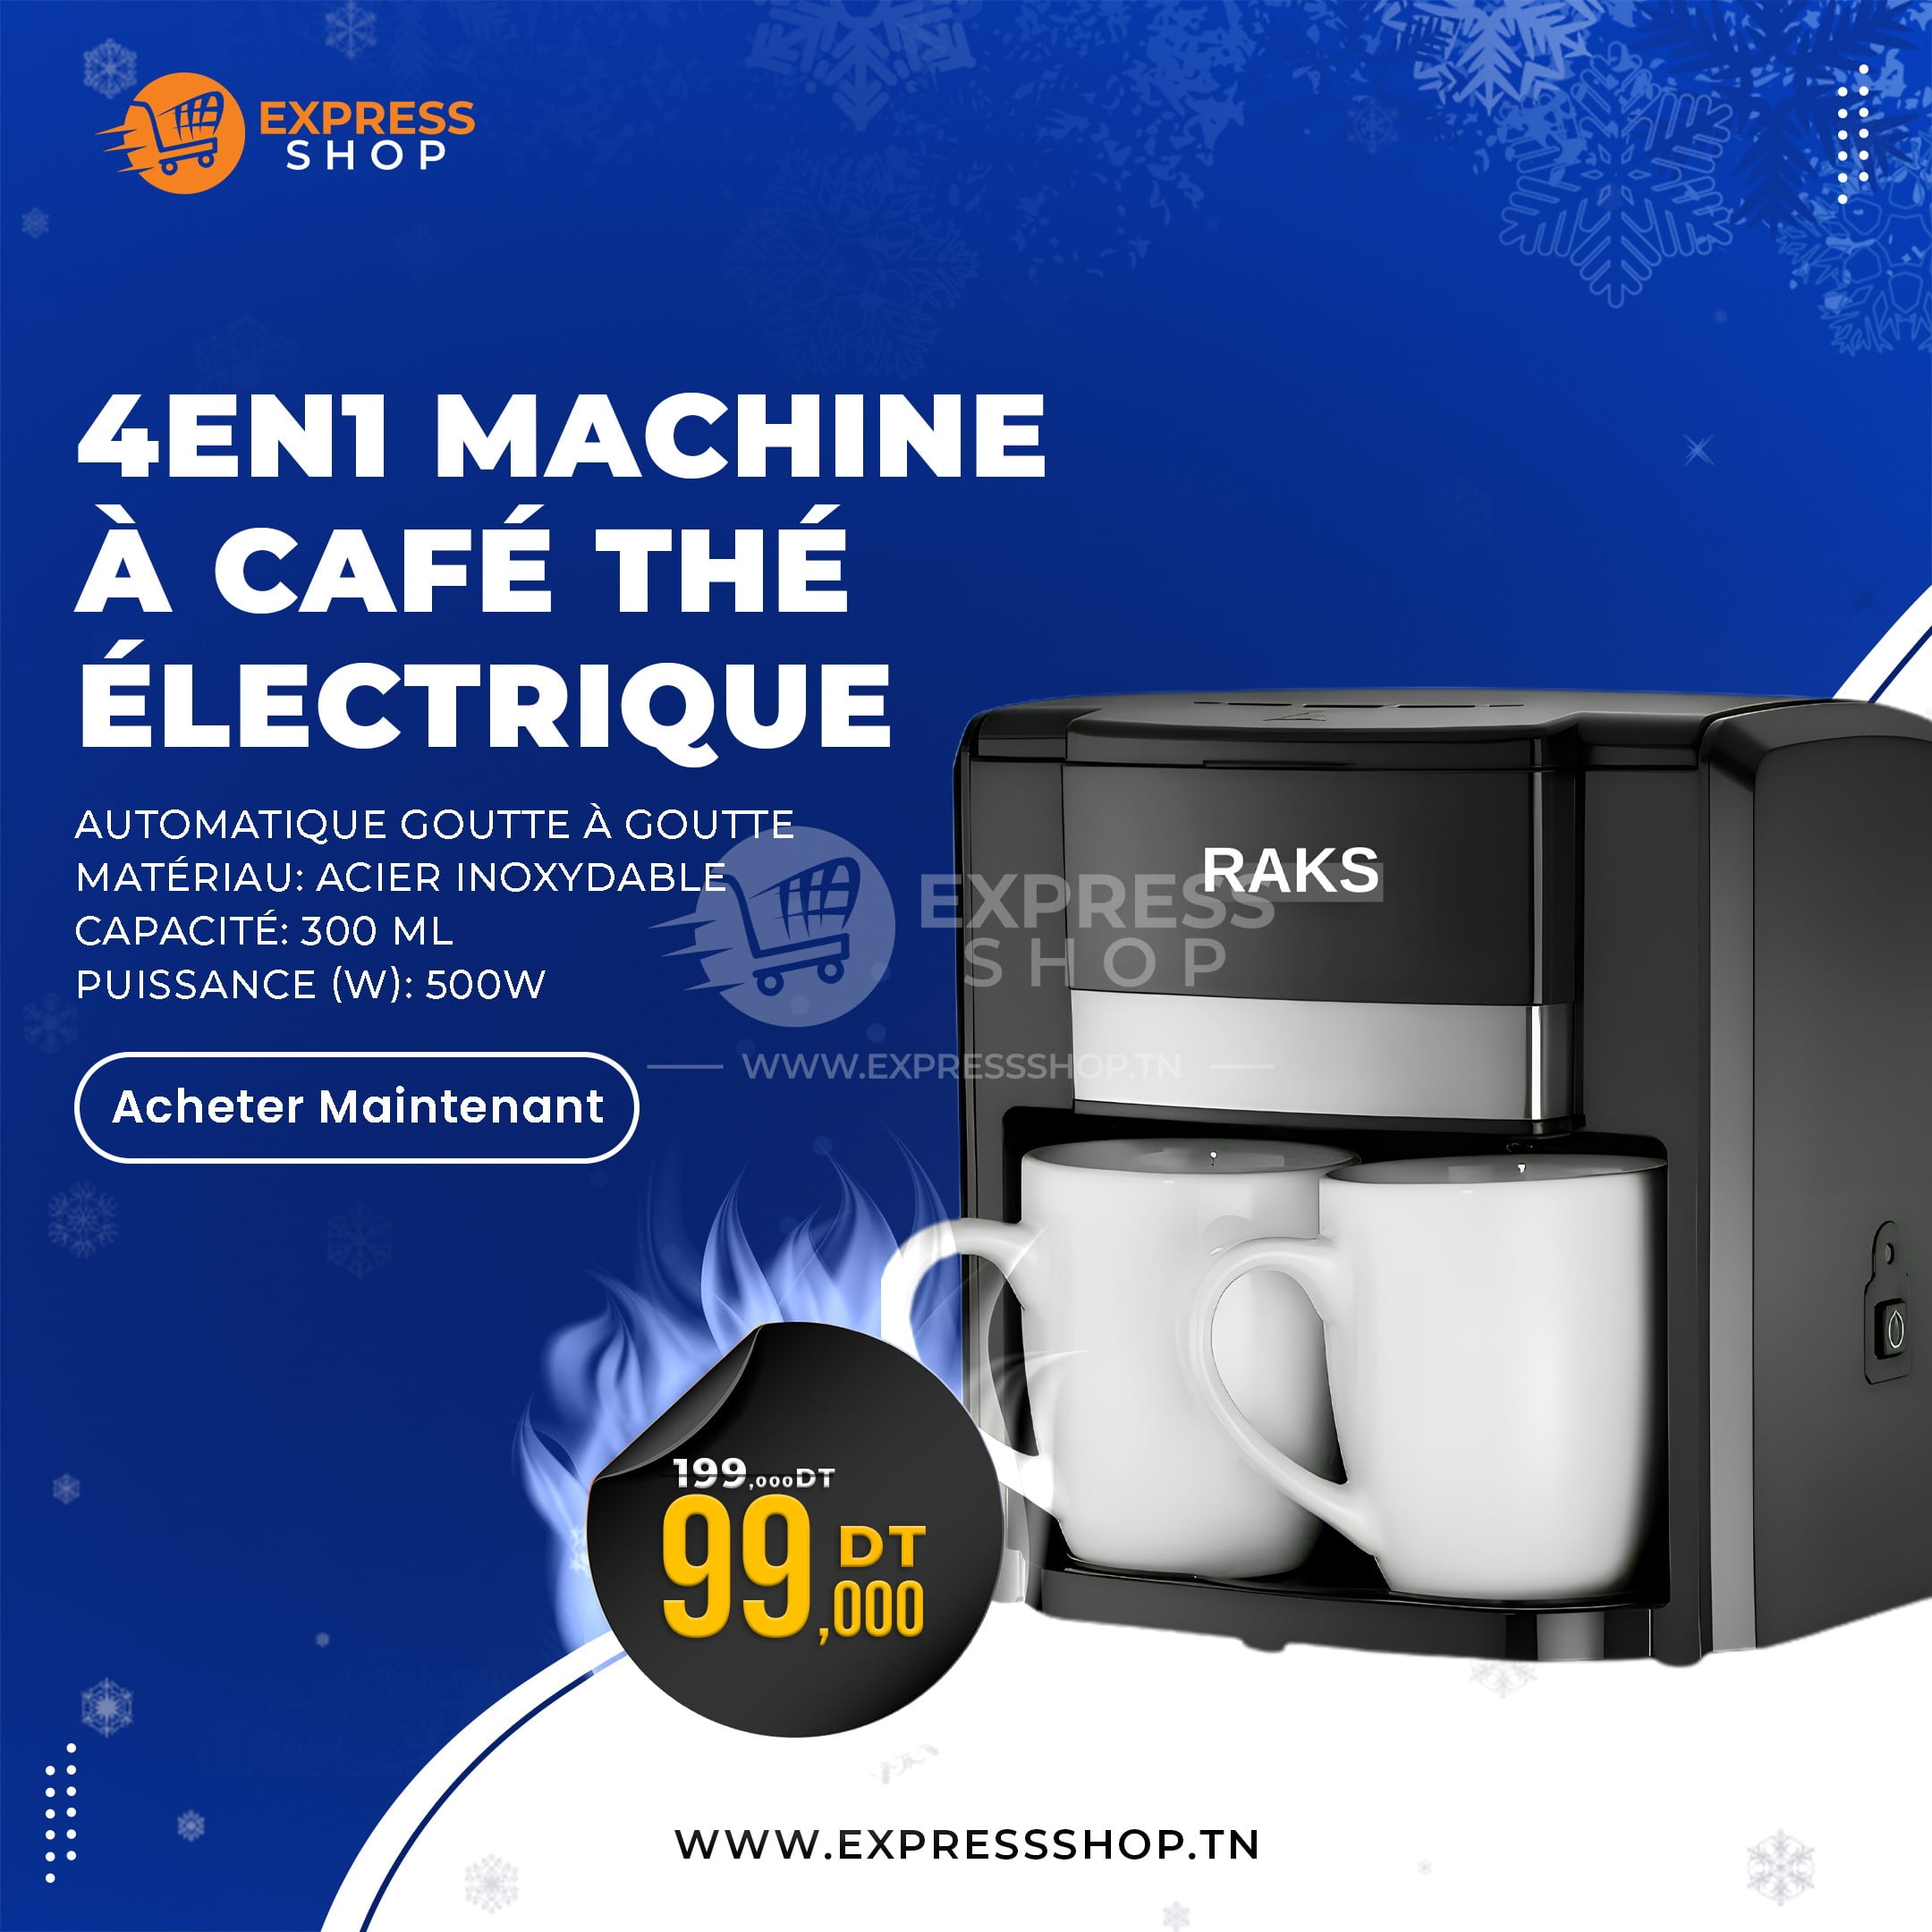 Machine à Café - 1 Tasse